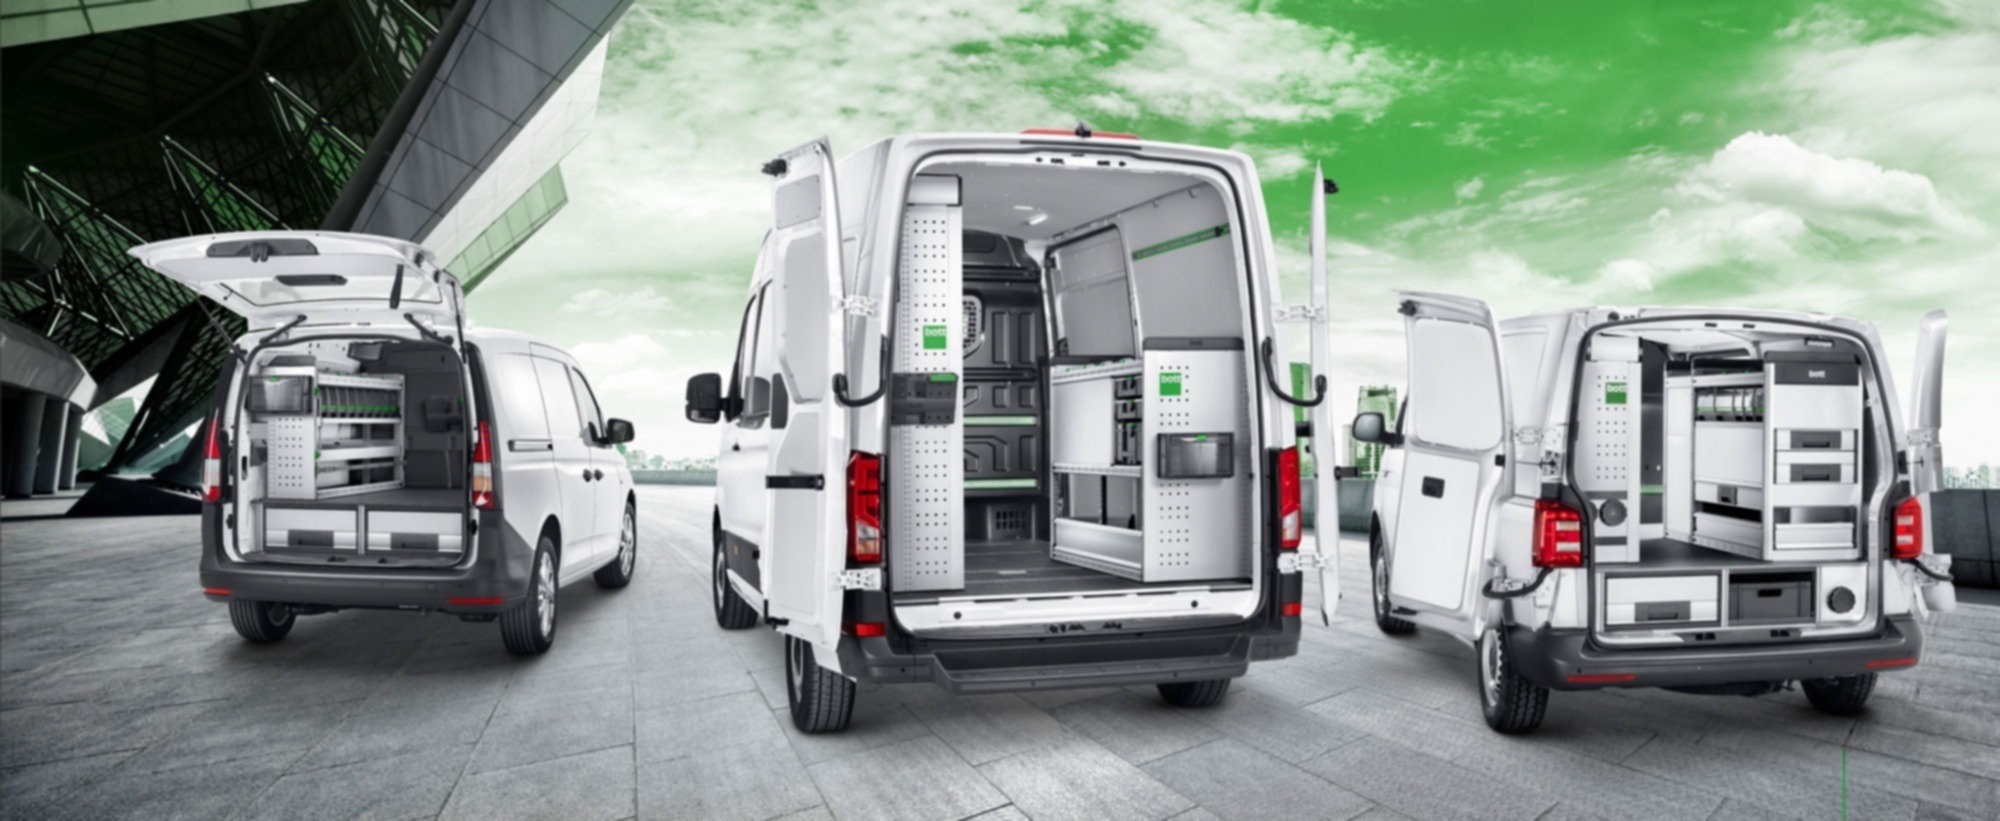 VW Caddy fordonsutrustning: Caddy hyllsystem och förvaringslådor